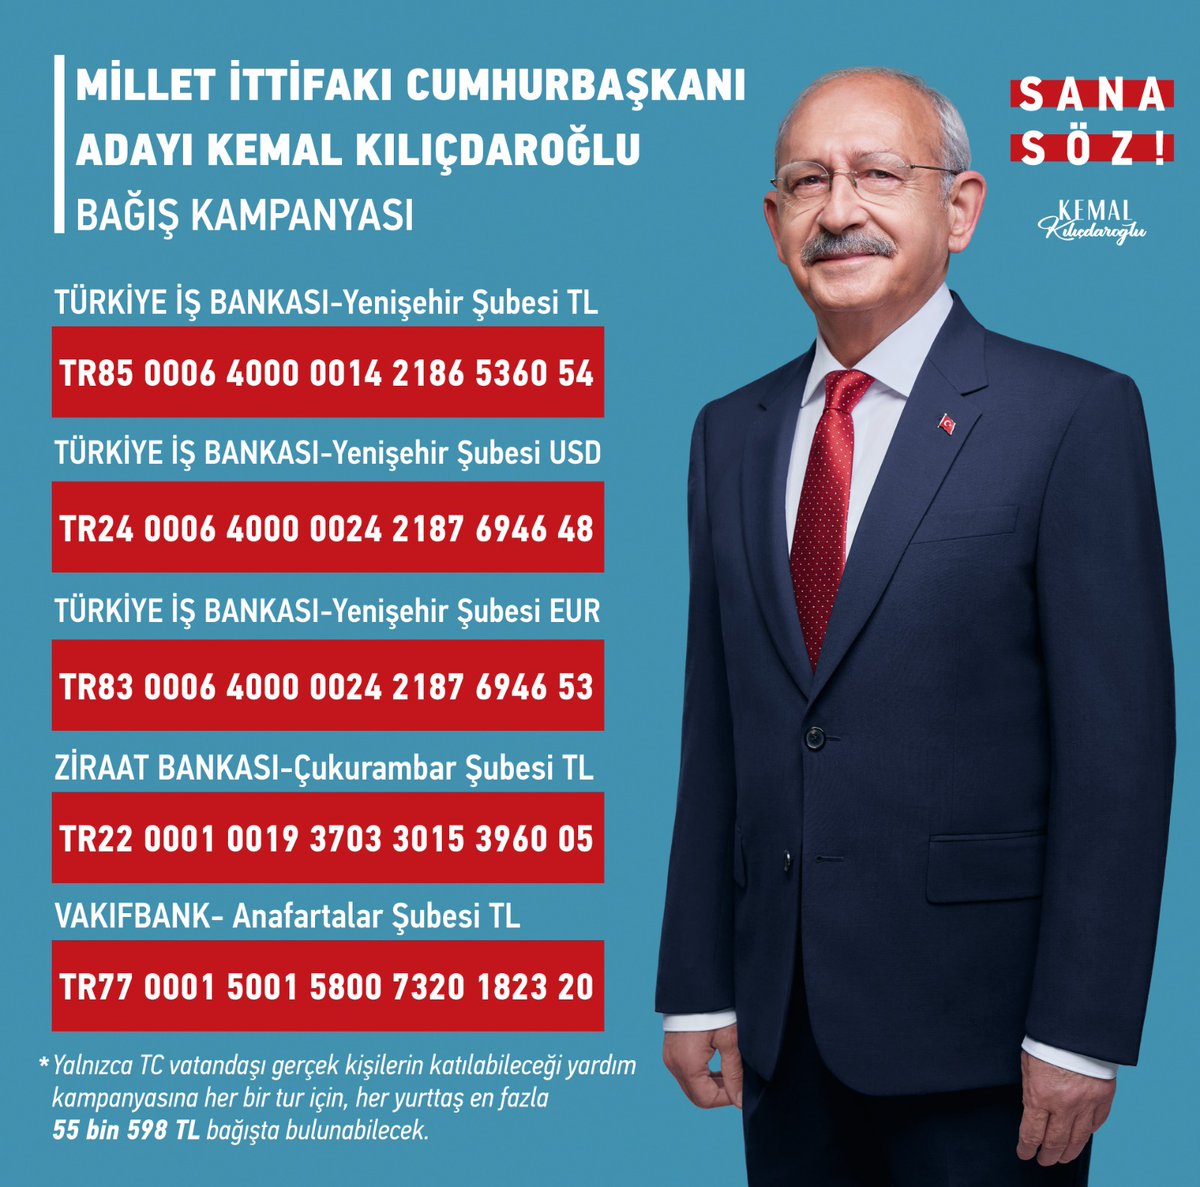 Halkın Cumhurbaşkanı Sayın Kemal Kılıçdaroğlu'na katkı sunmak için bağış kampanyamız başlamıştır. 14 Mayıs’taki cumhurbaşkanlığı seçimleri için sarayın günden güne artan bütçesine karşı dayanışmamızı güçlendirmek isteyen yurttaşlarımızın desteklerini bekliyoruz!